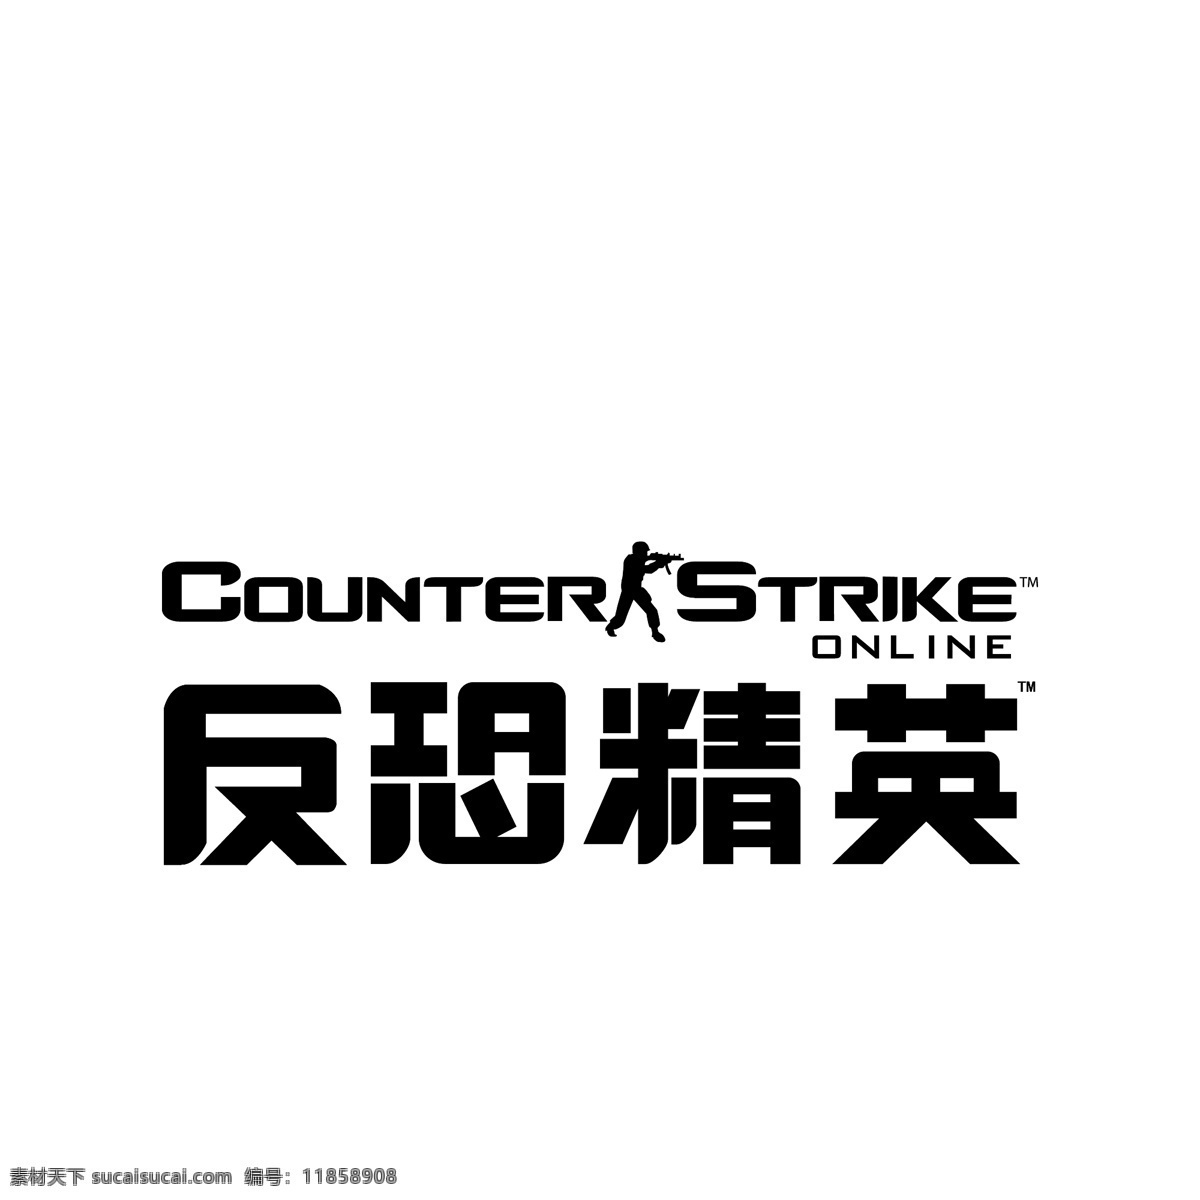 反恐精英 logo 标志 反恐 精英 counter strike cs 射击游戏 logo设计